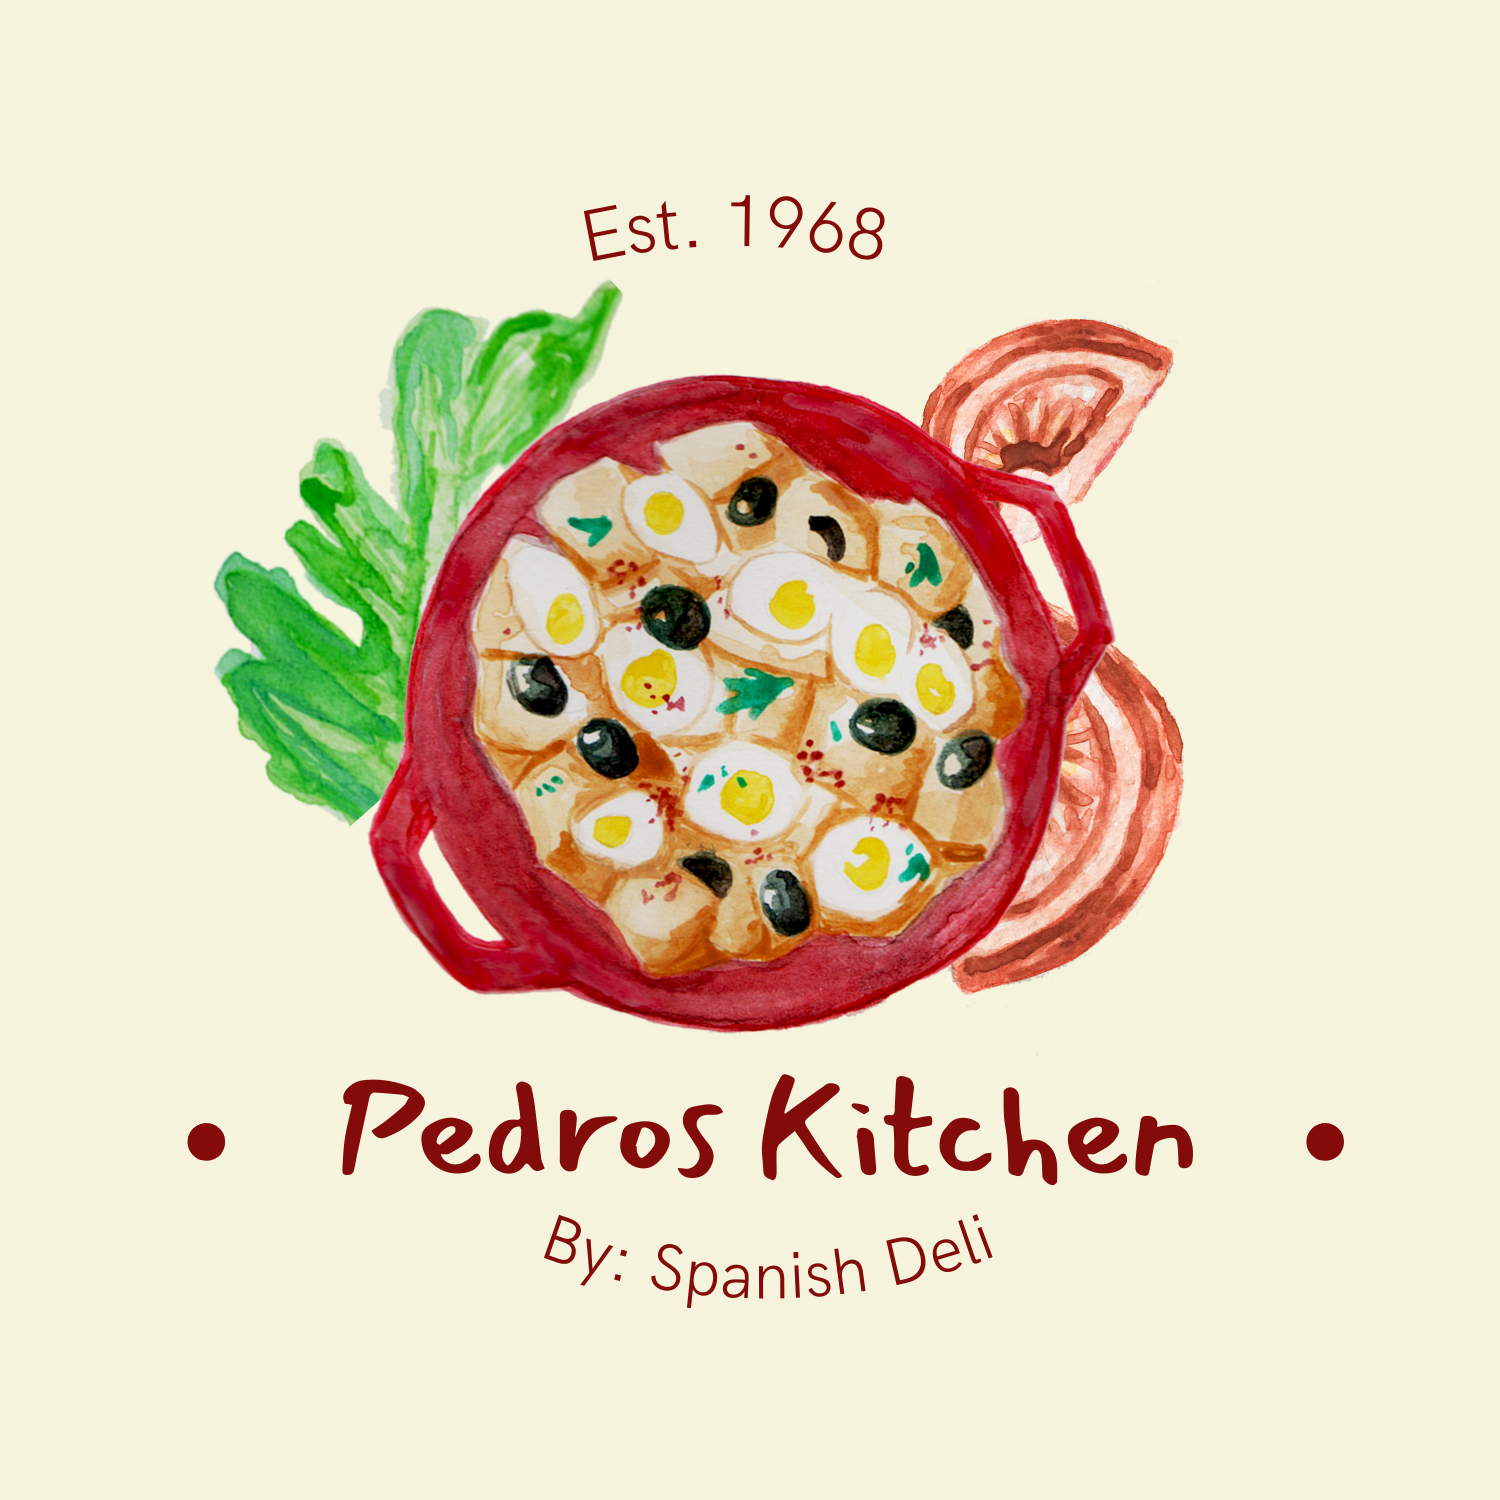 Pedros Kitchen